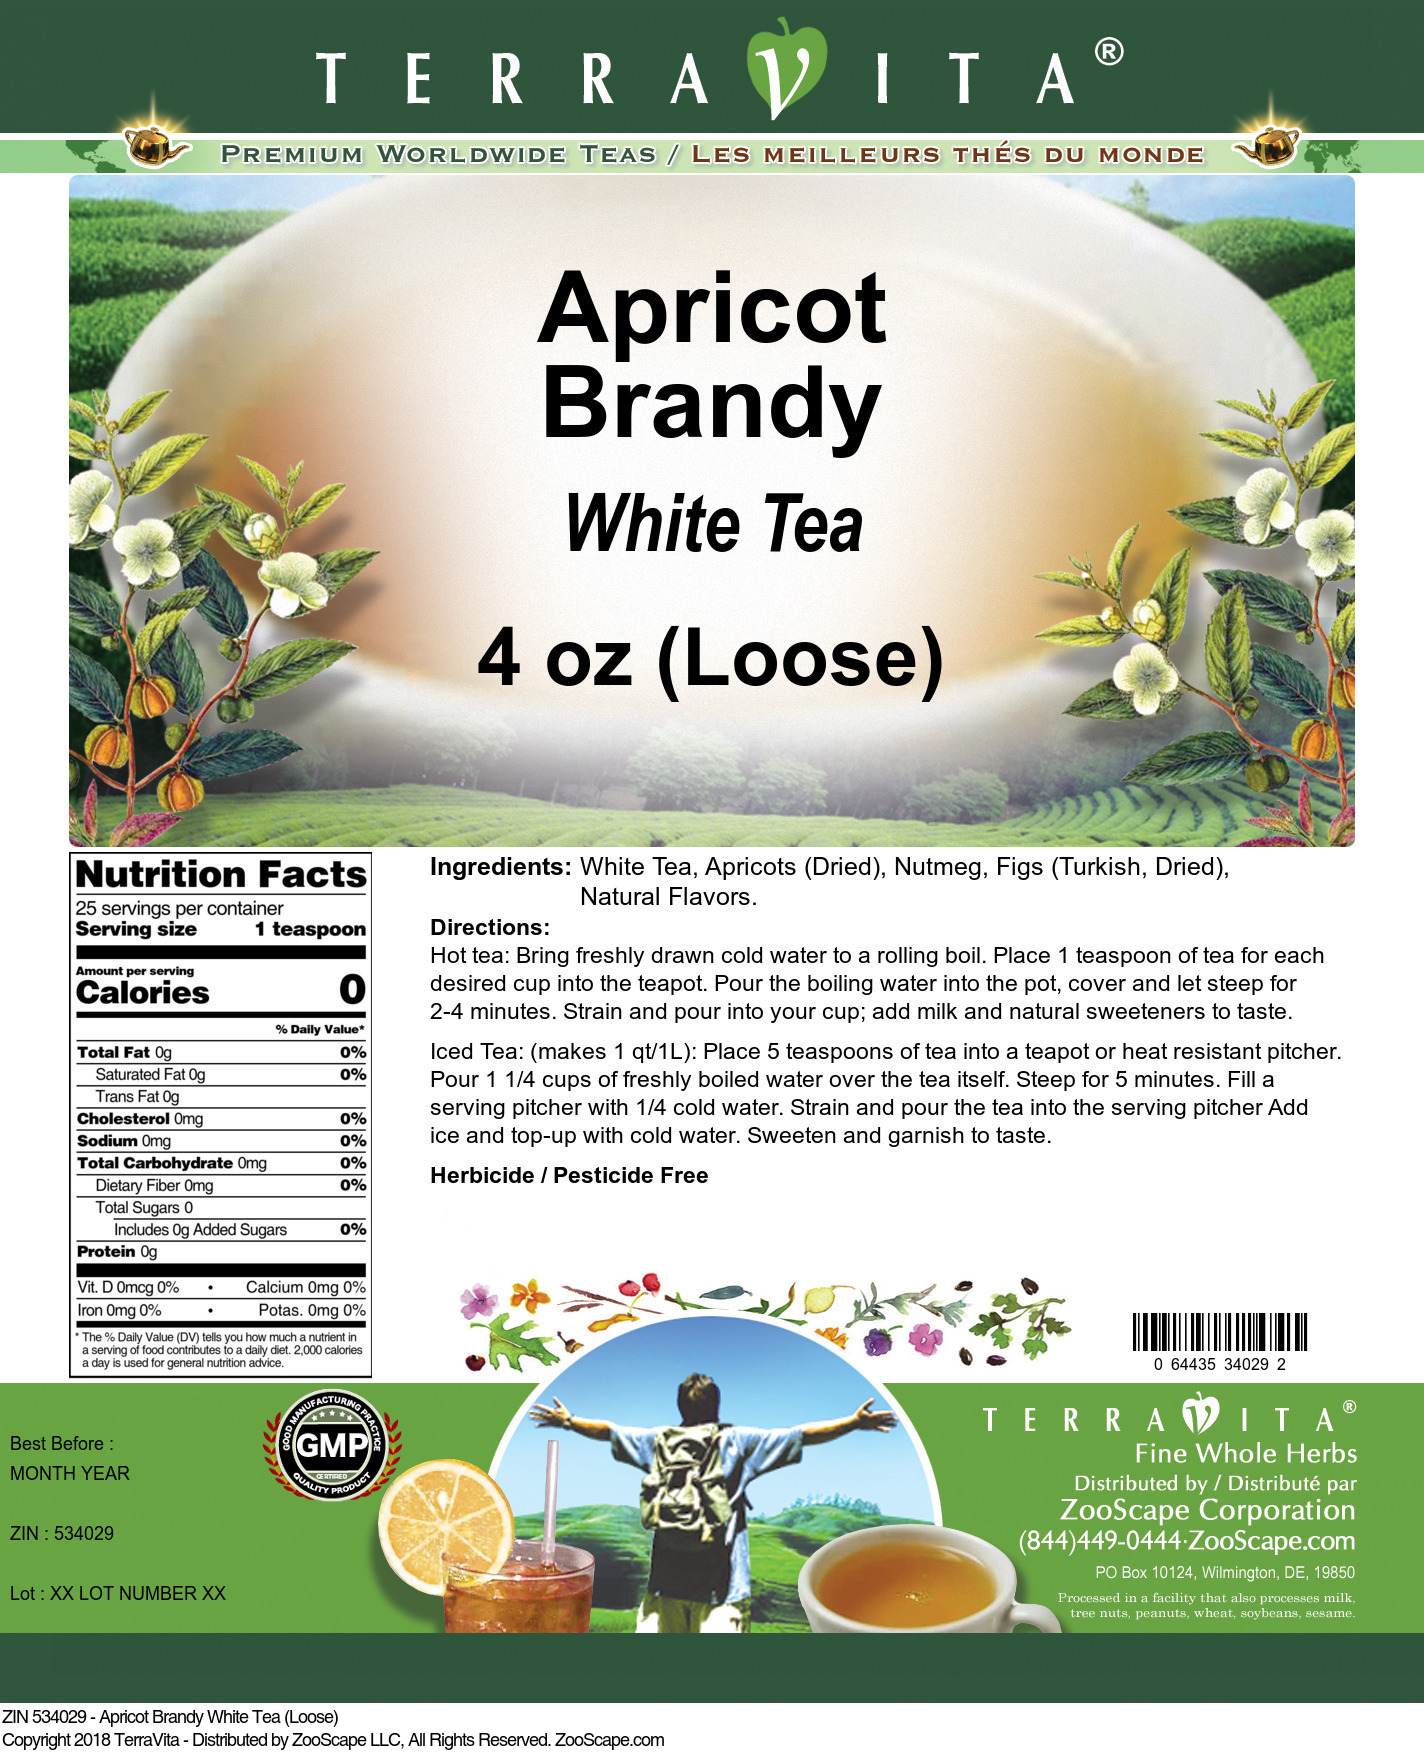 Apricot Brandy White Tea (Loose) - Label